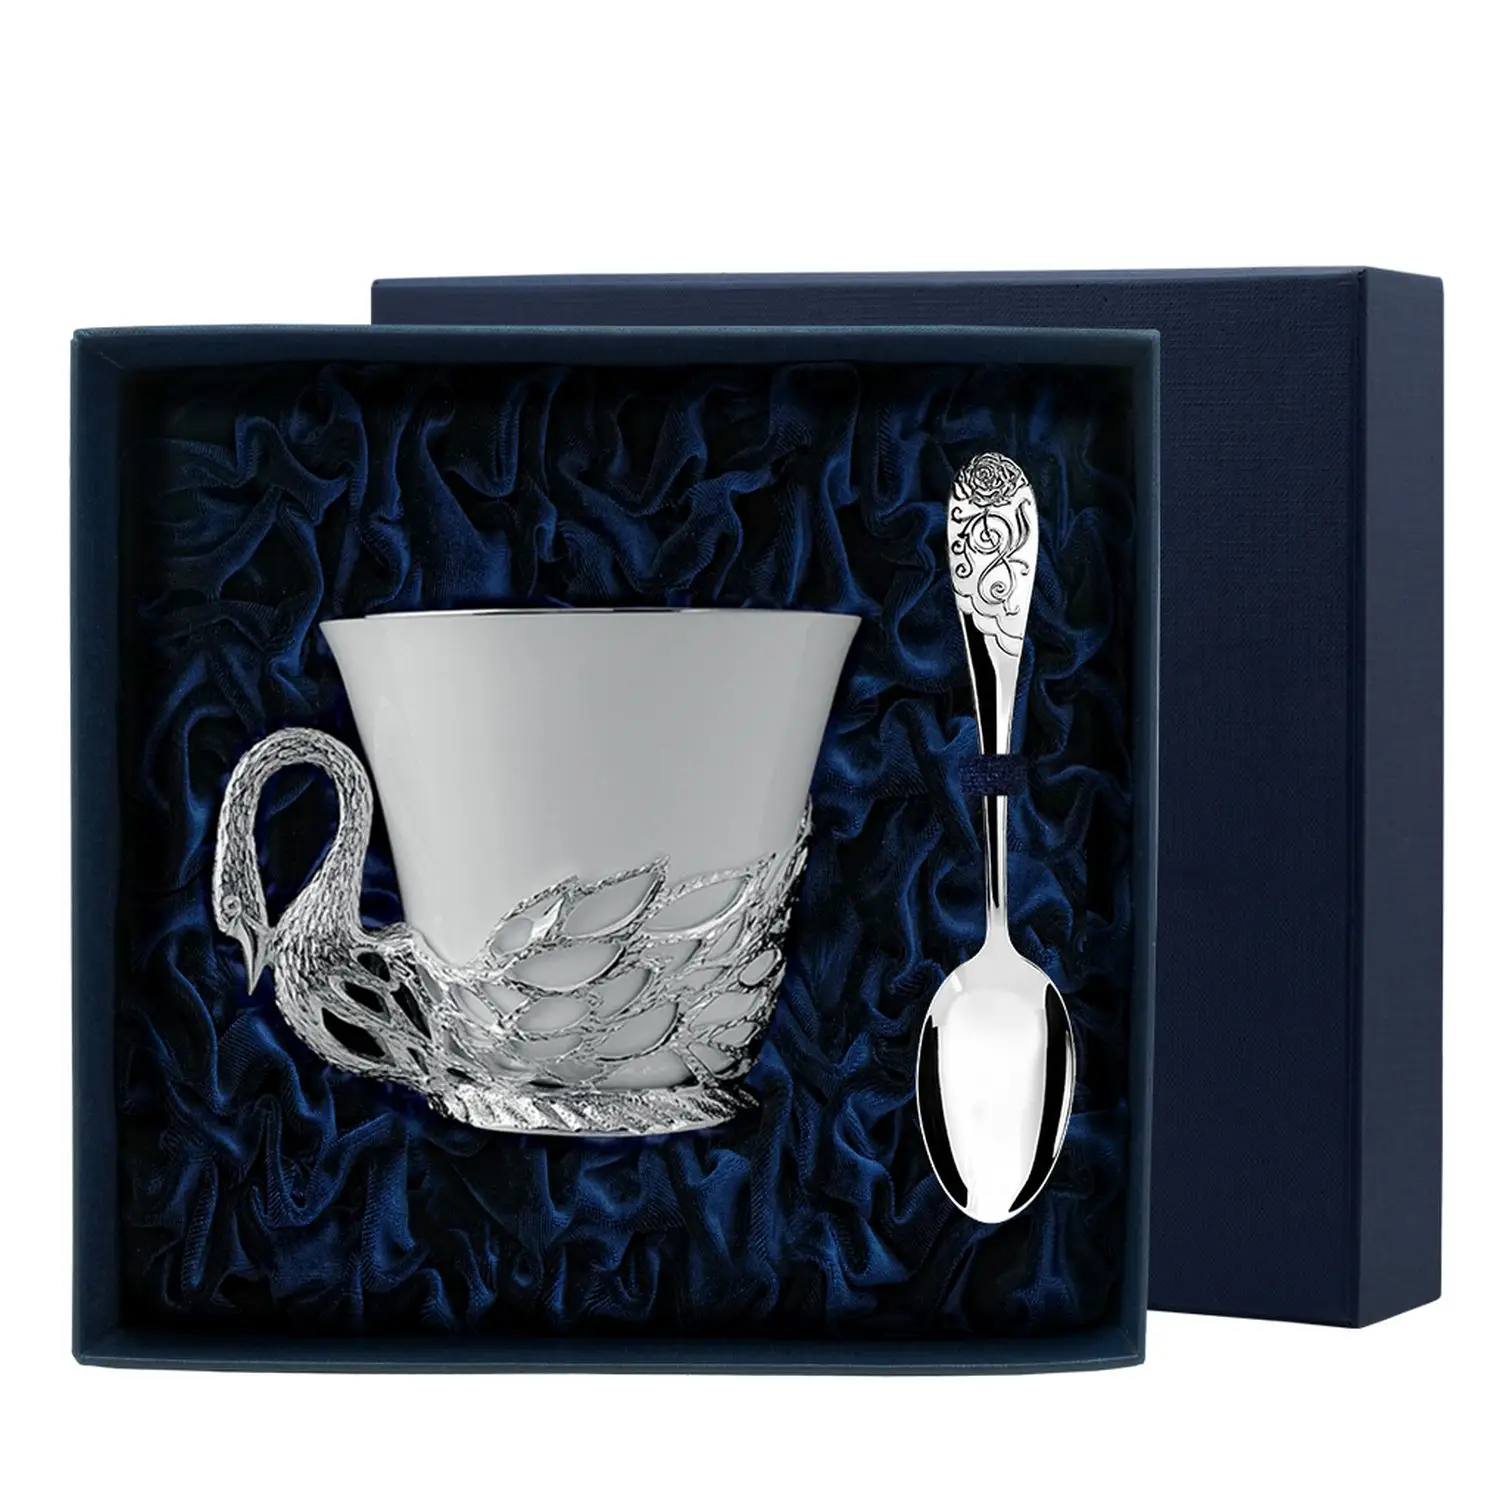 Набор чайная чашка Лебедь: ложка, чашка (Серебро 925) набор чайная чашка император ложка чашка серебро 925